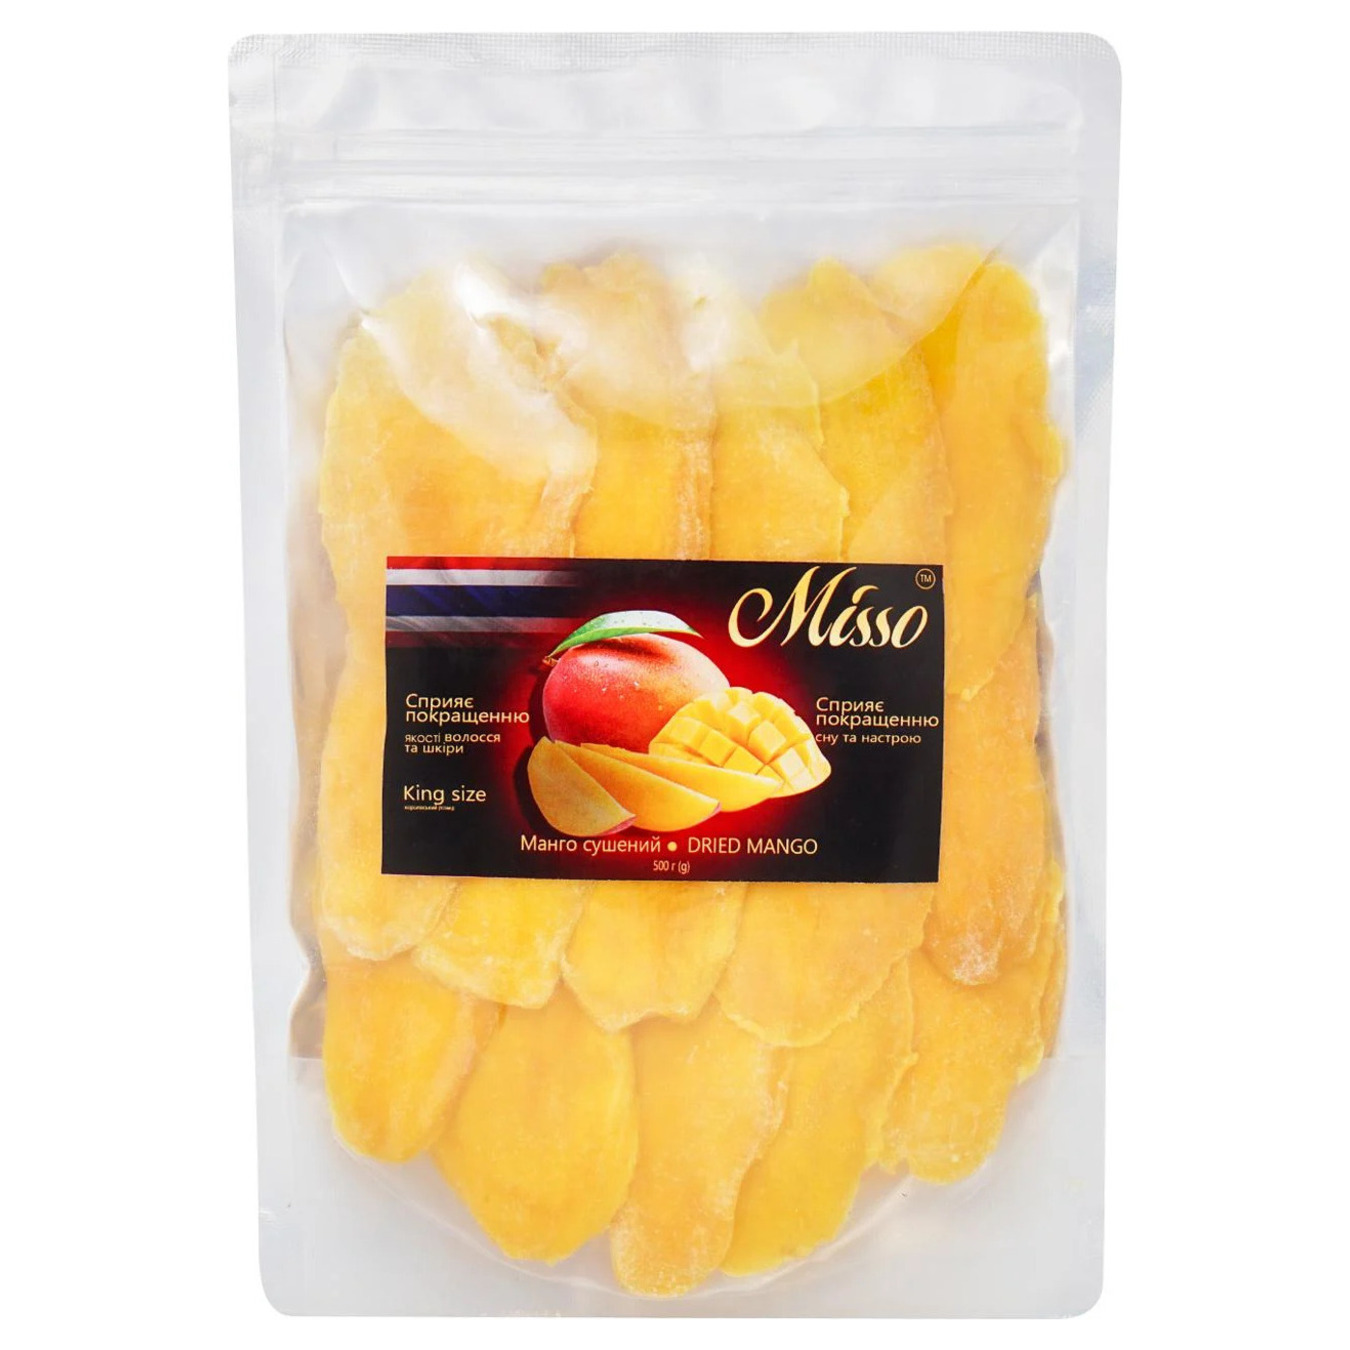 Misso dried mango 500g